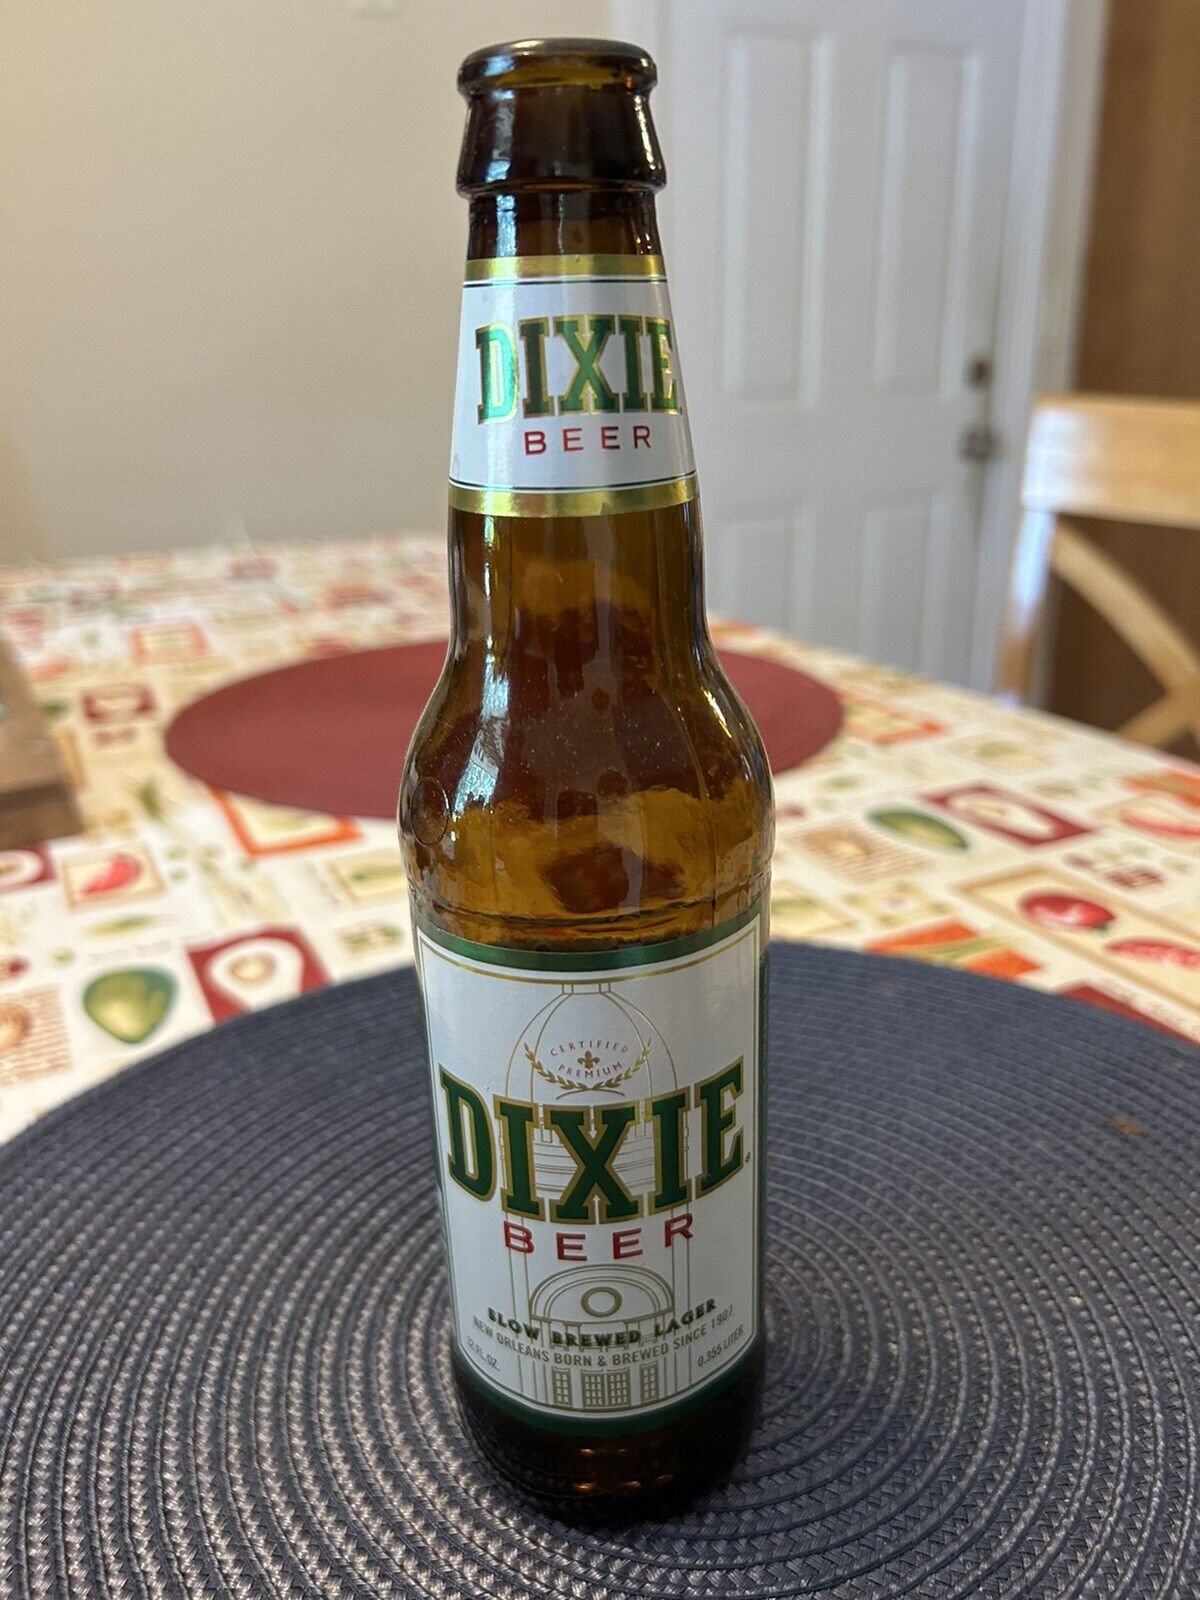 Dixie Beer Bottles Vintage